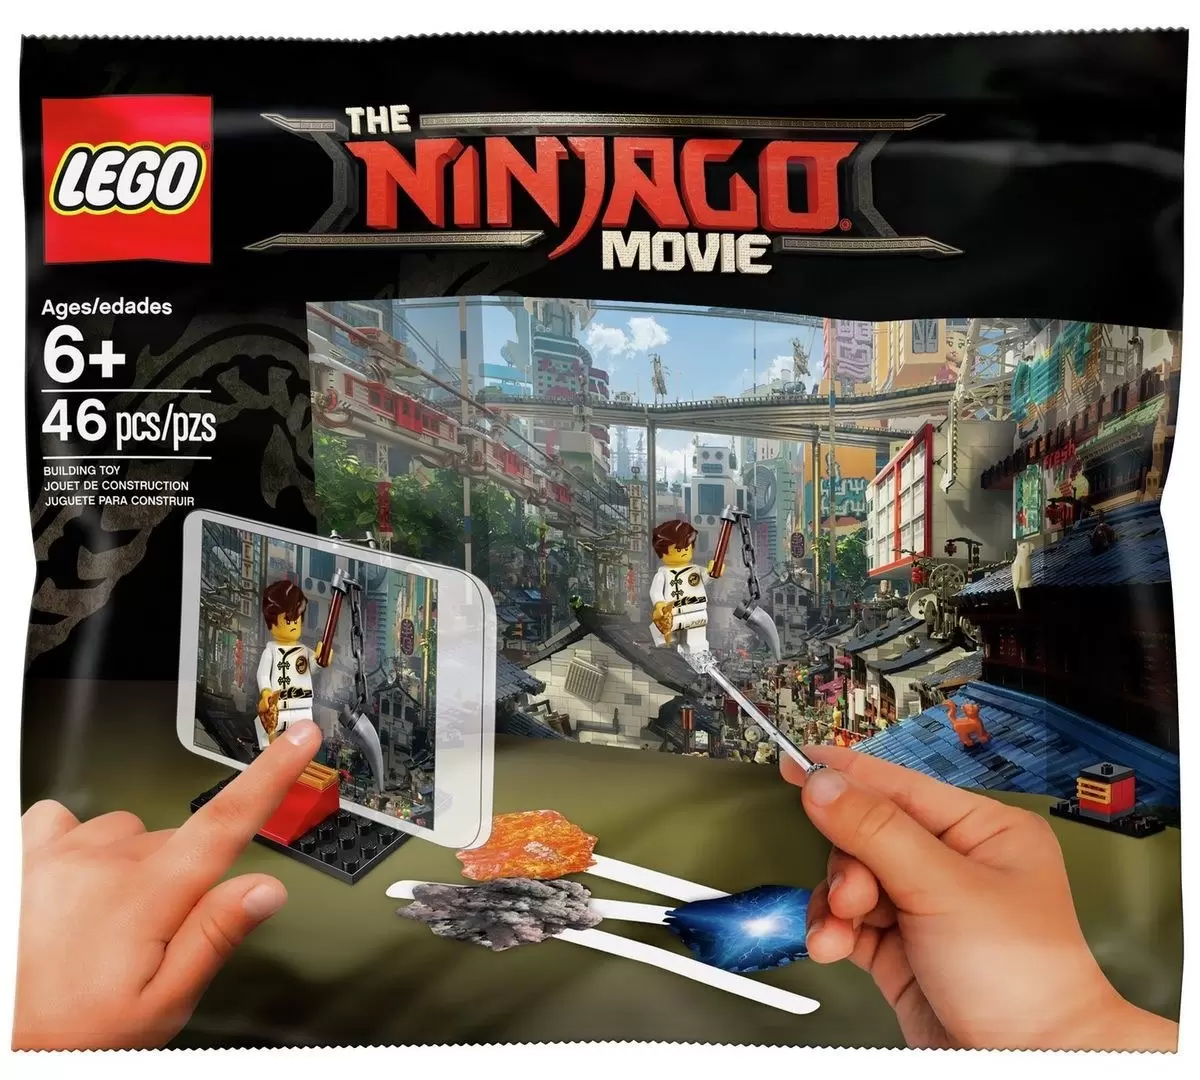 The LEGO Ninjago Movie - Movie Maker